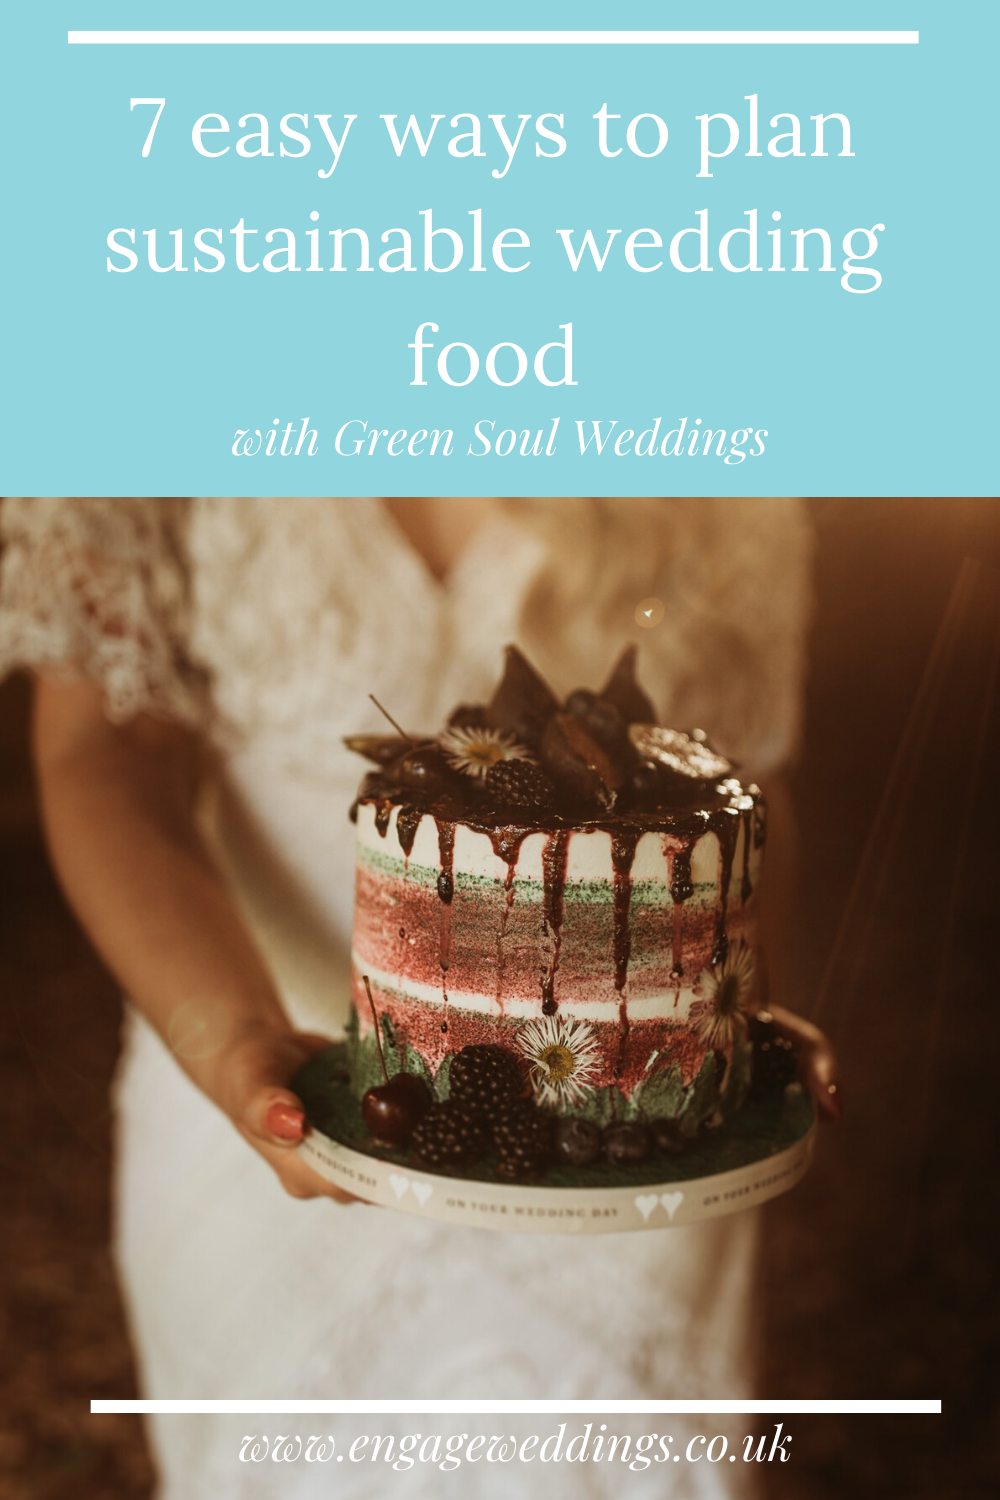 7 easy ways to plan sustainable wedding food_engageweddings.co.uk.png